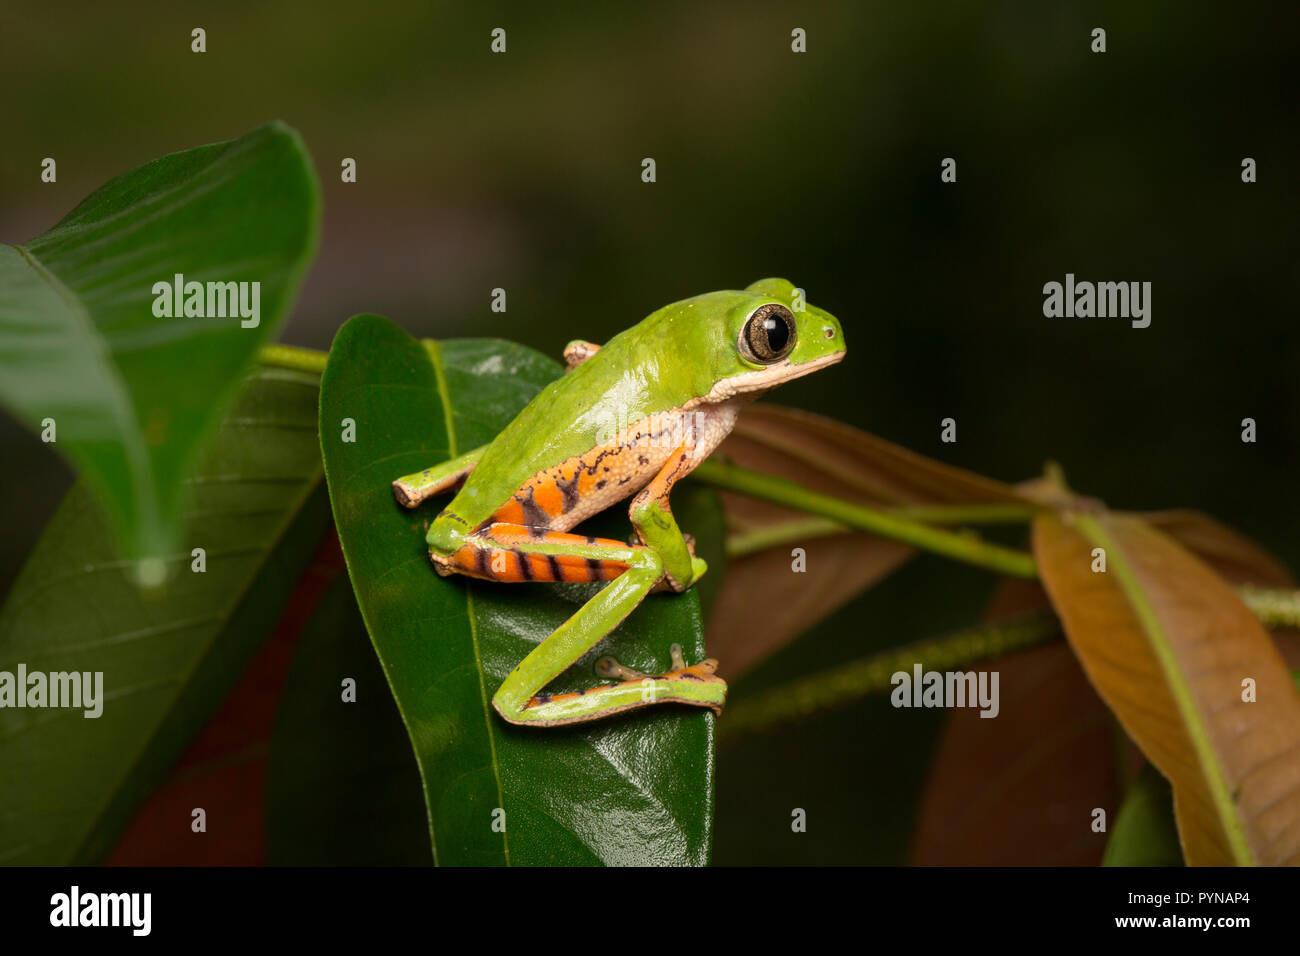 Une grenouille d'arbre photographié dans les jungles du Suriname près de Bakhuis. Le Suriname est connu pour ses forêts tropicales et la biodiversité préservée avec une gamme énorme o Banque D'Images